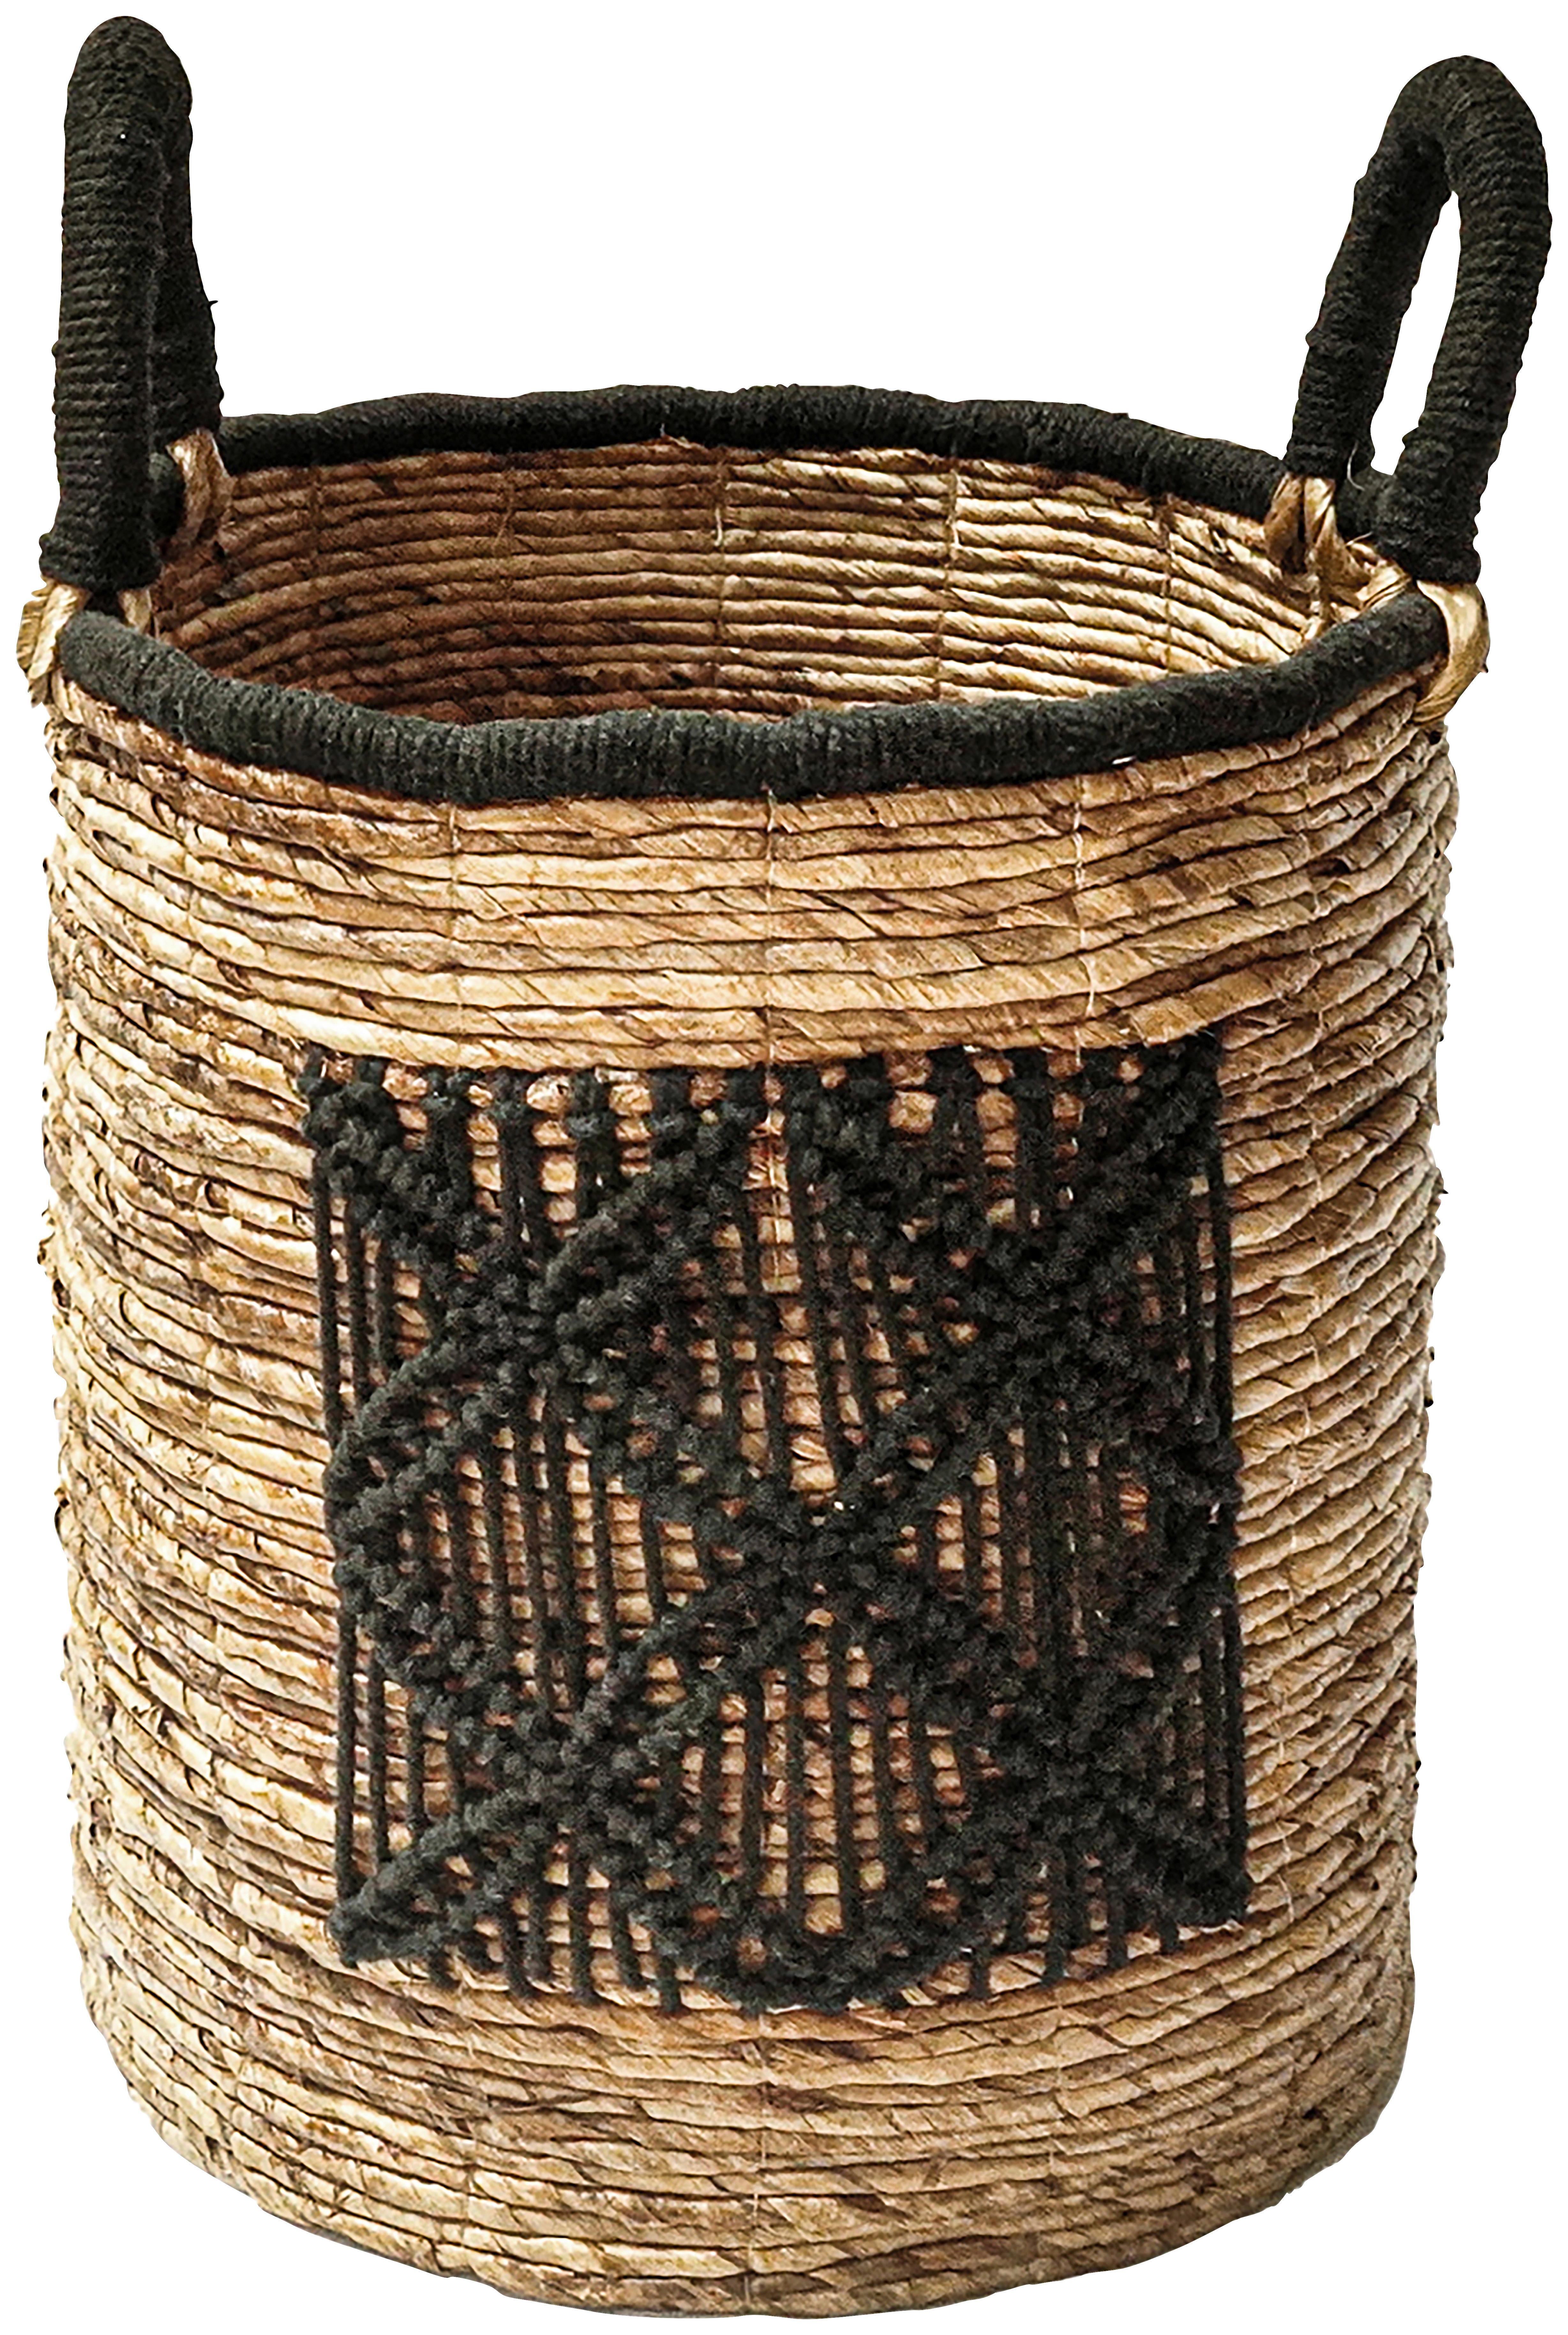 Košara Yuna -L- - črna/naravne barve, Moderno, tekstil/naravni materiali (41/45-55cm) - Premium Living